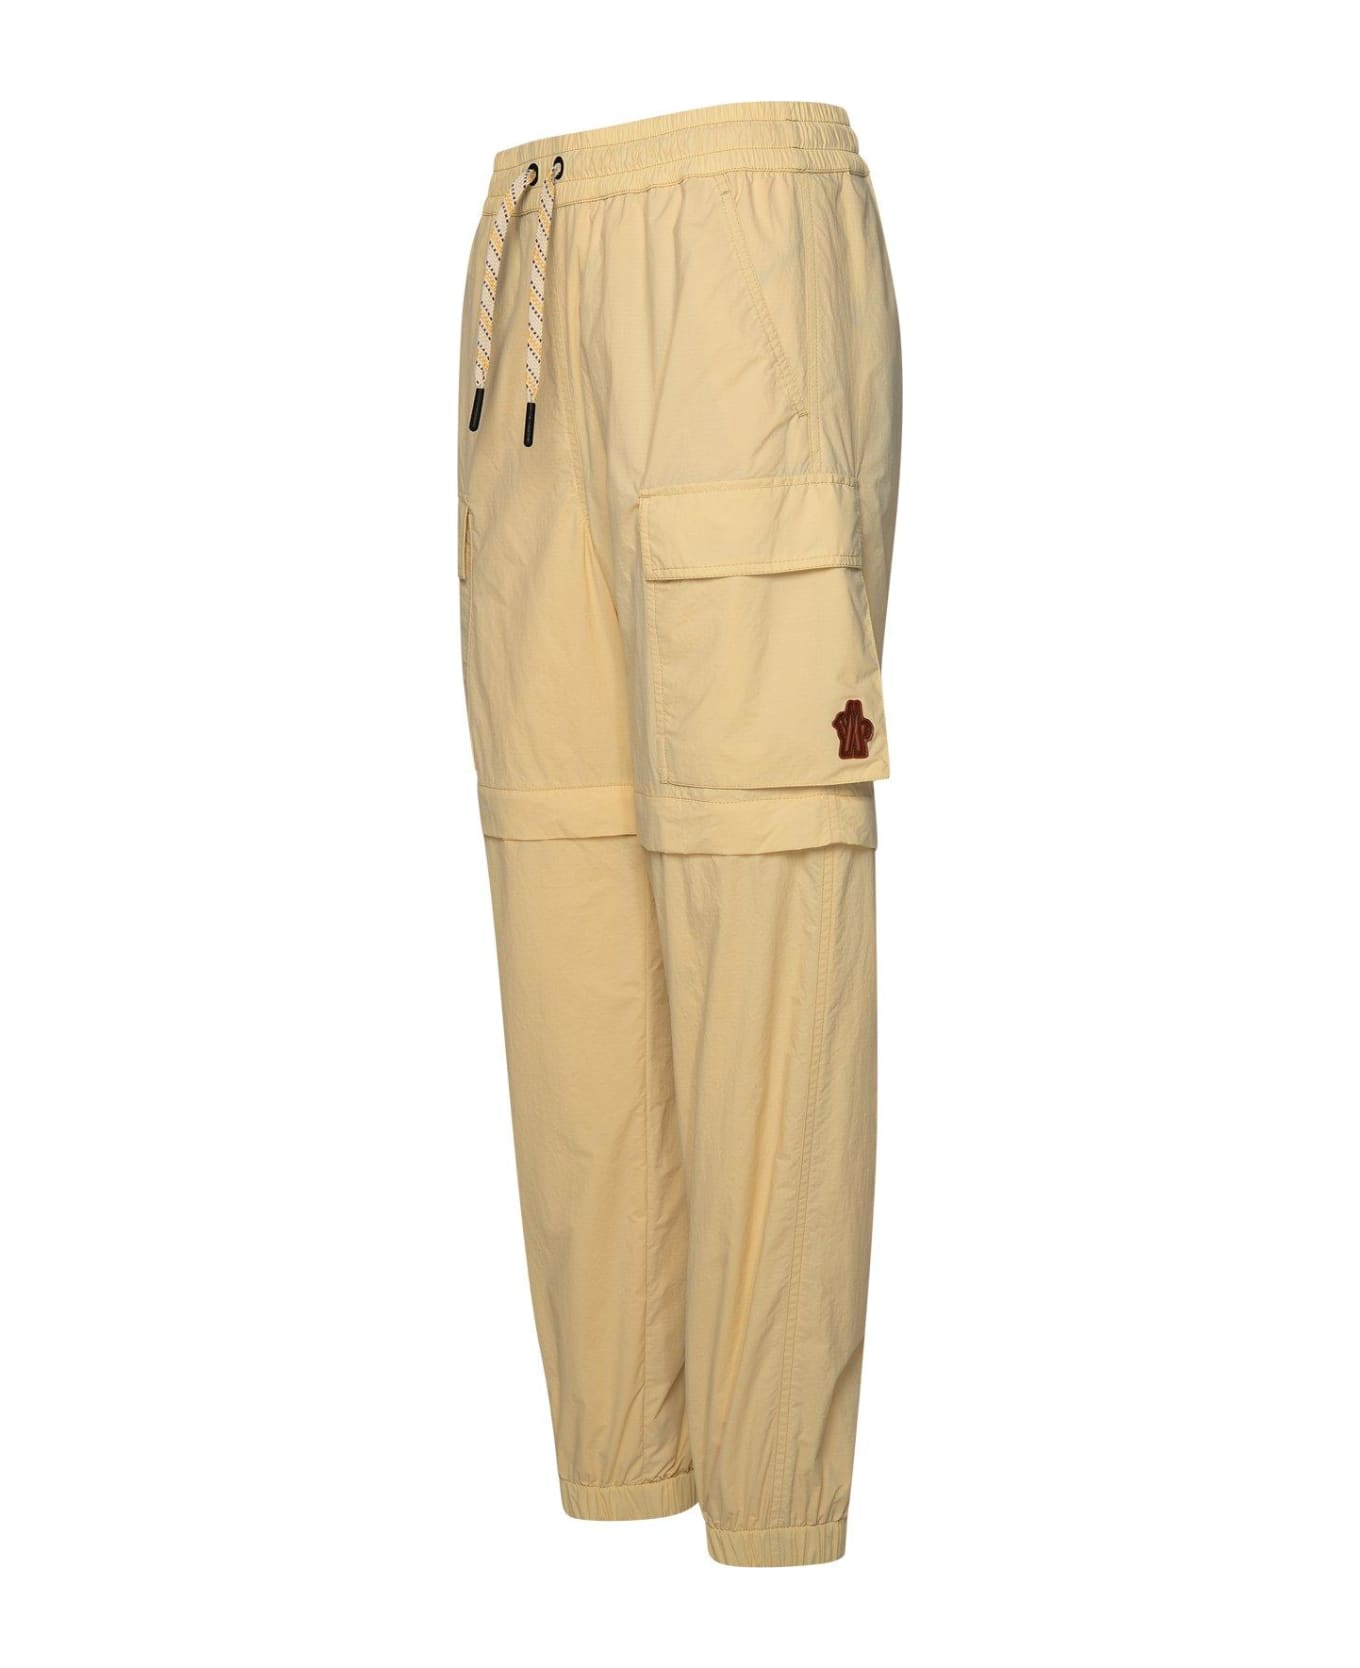 Moncler Grenoble Pocket Detailed Cargo Trousers スウェットパンツ